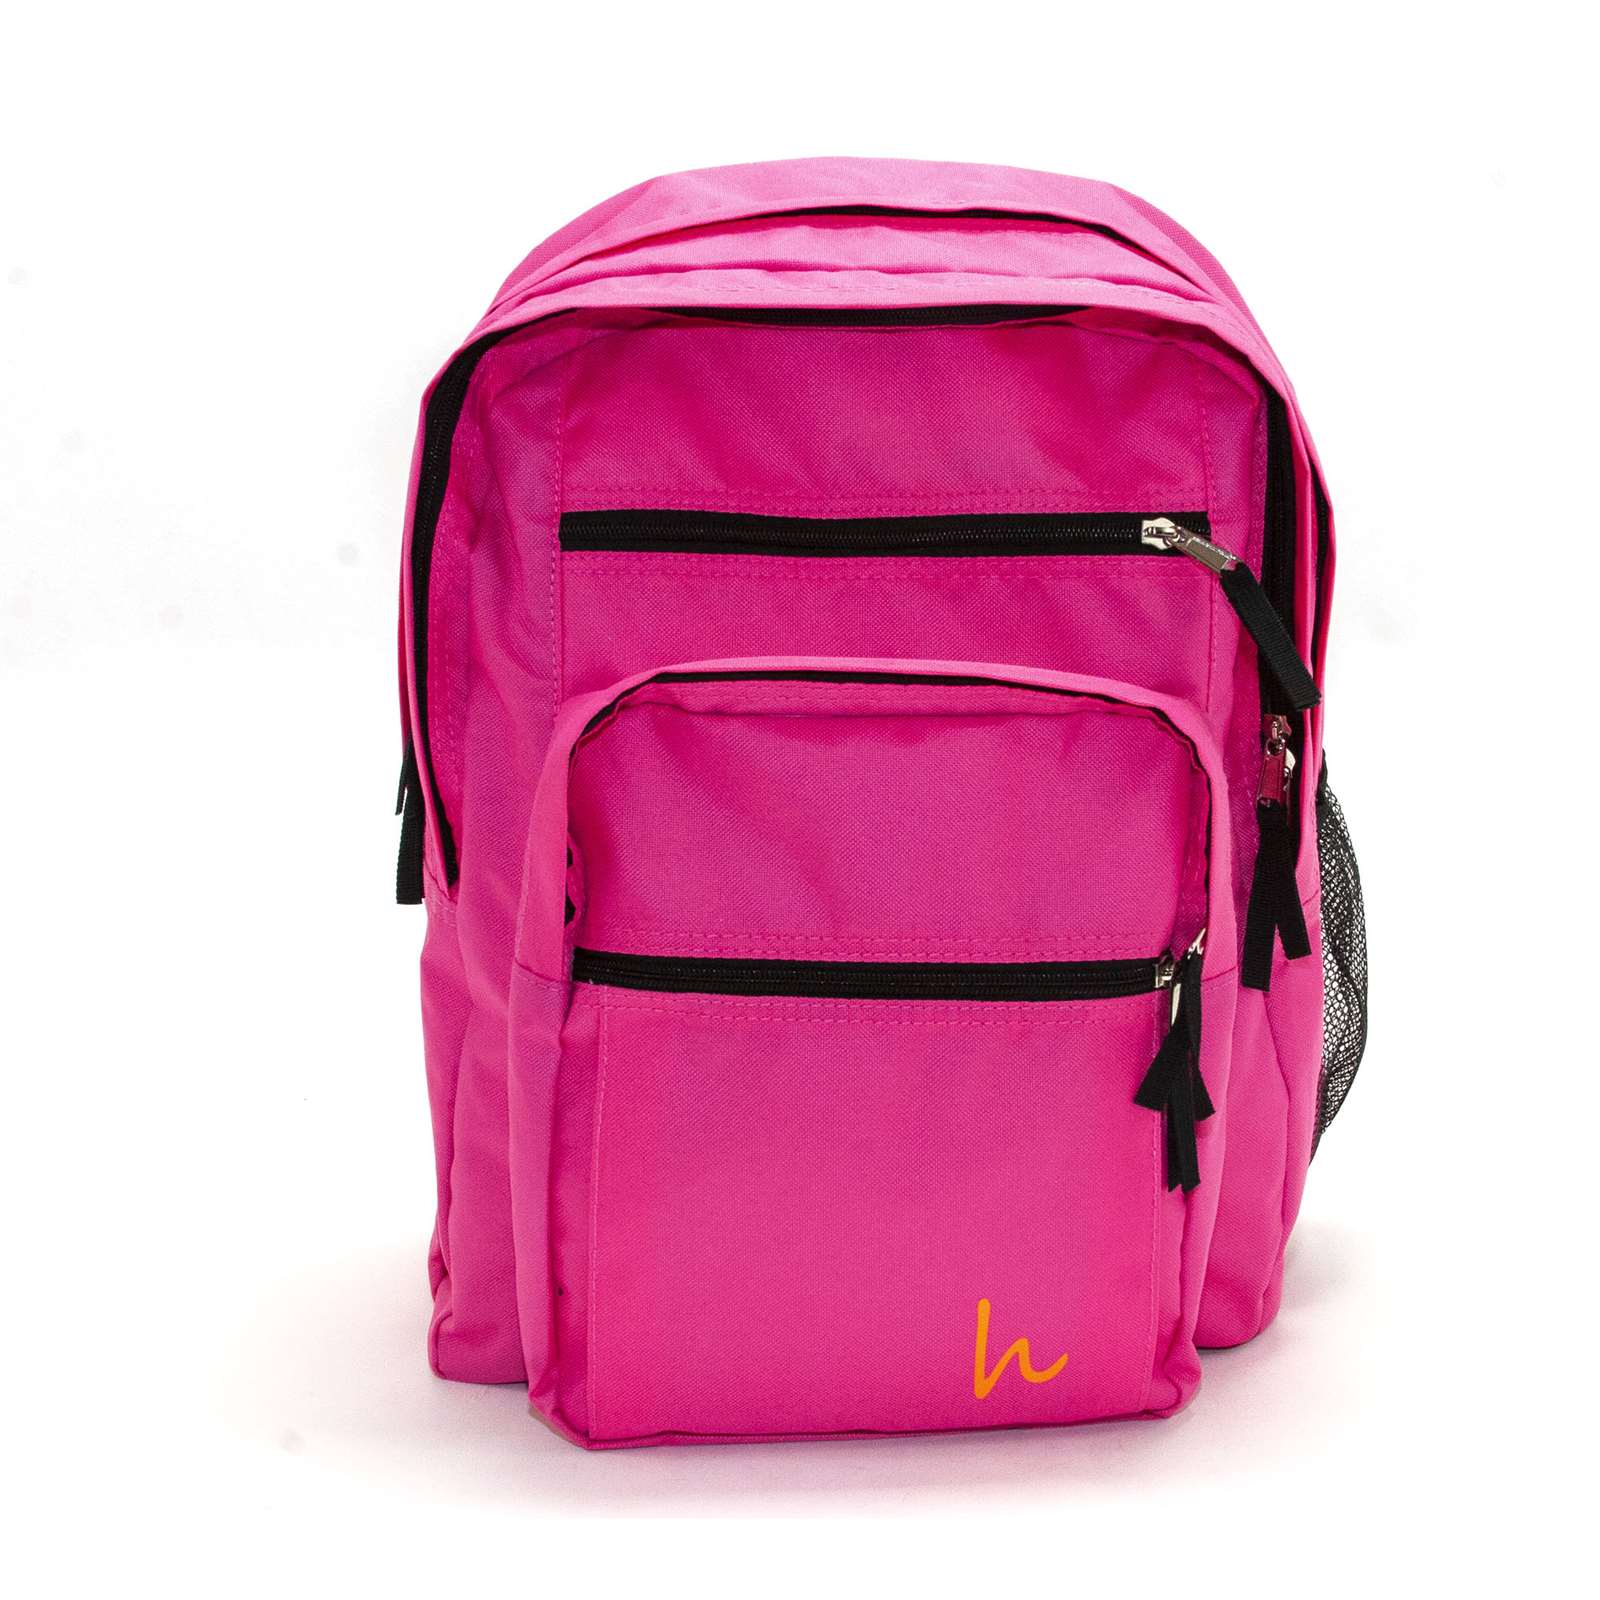 Hakki Men Ready To Go Everyday Multipurpose Backpack